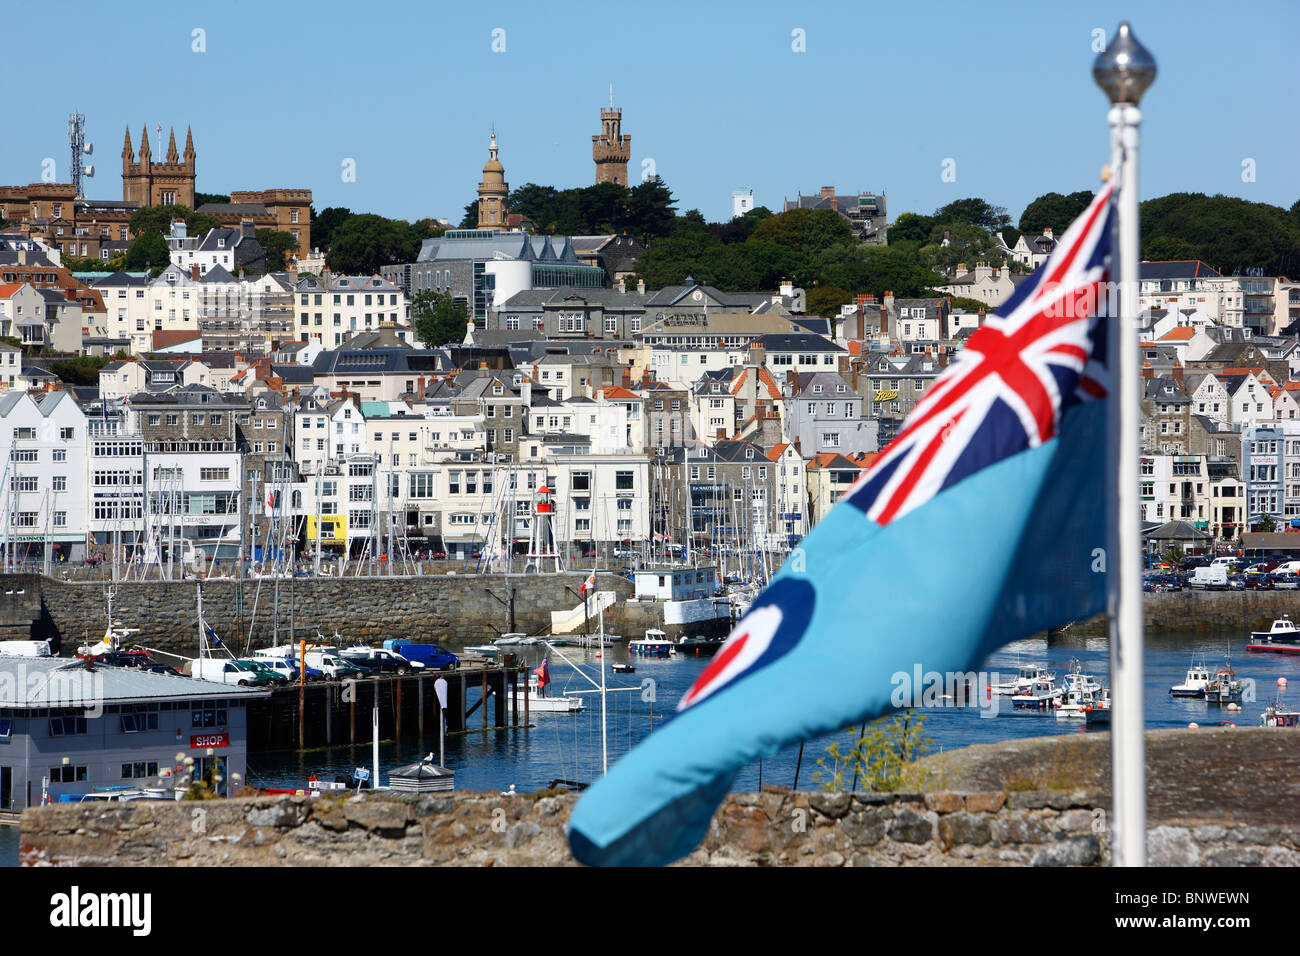 Porto Porto di St Peter Port Guernsey, Regno Unito, nelle Isole del Canale. Barche a vela e yacht nel bacino portuale, skyline della città Foto Stock